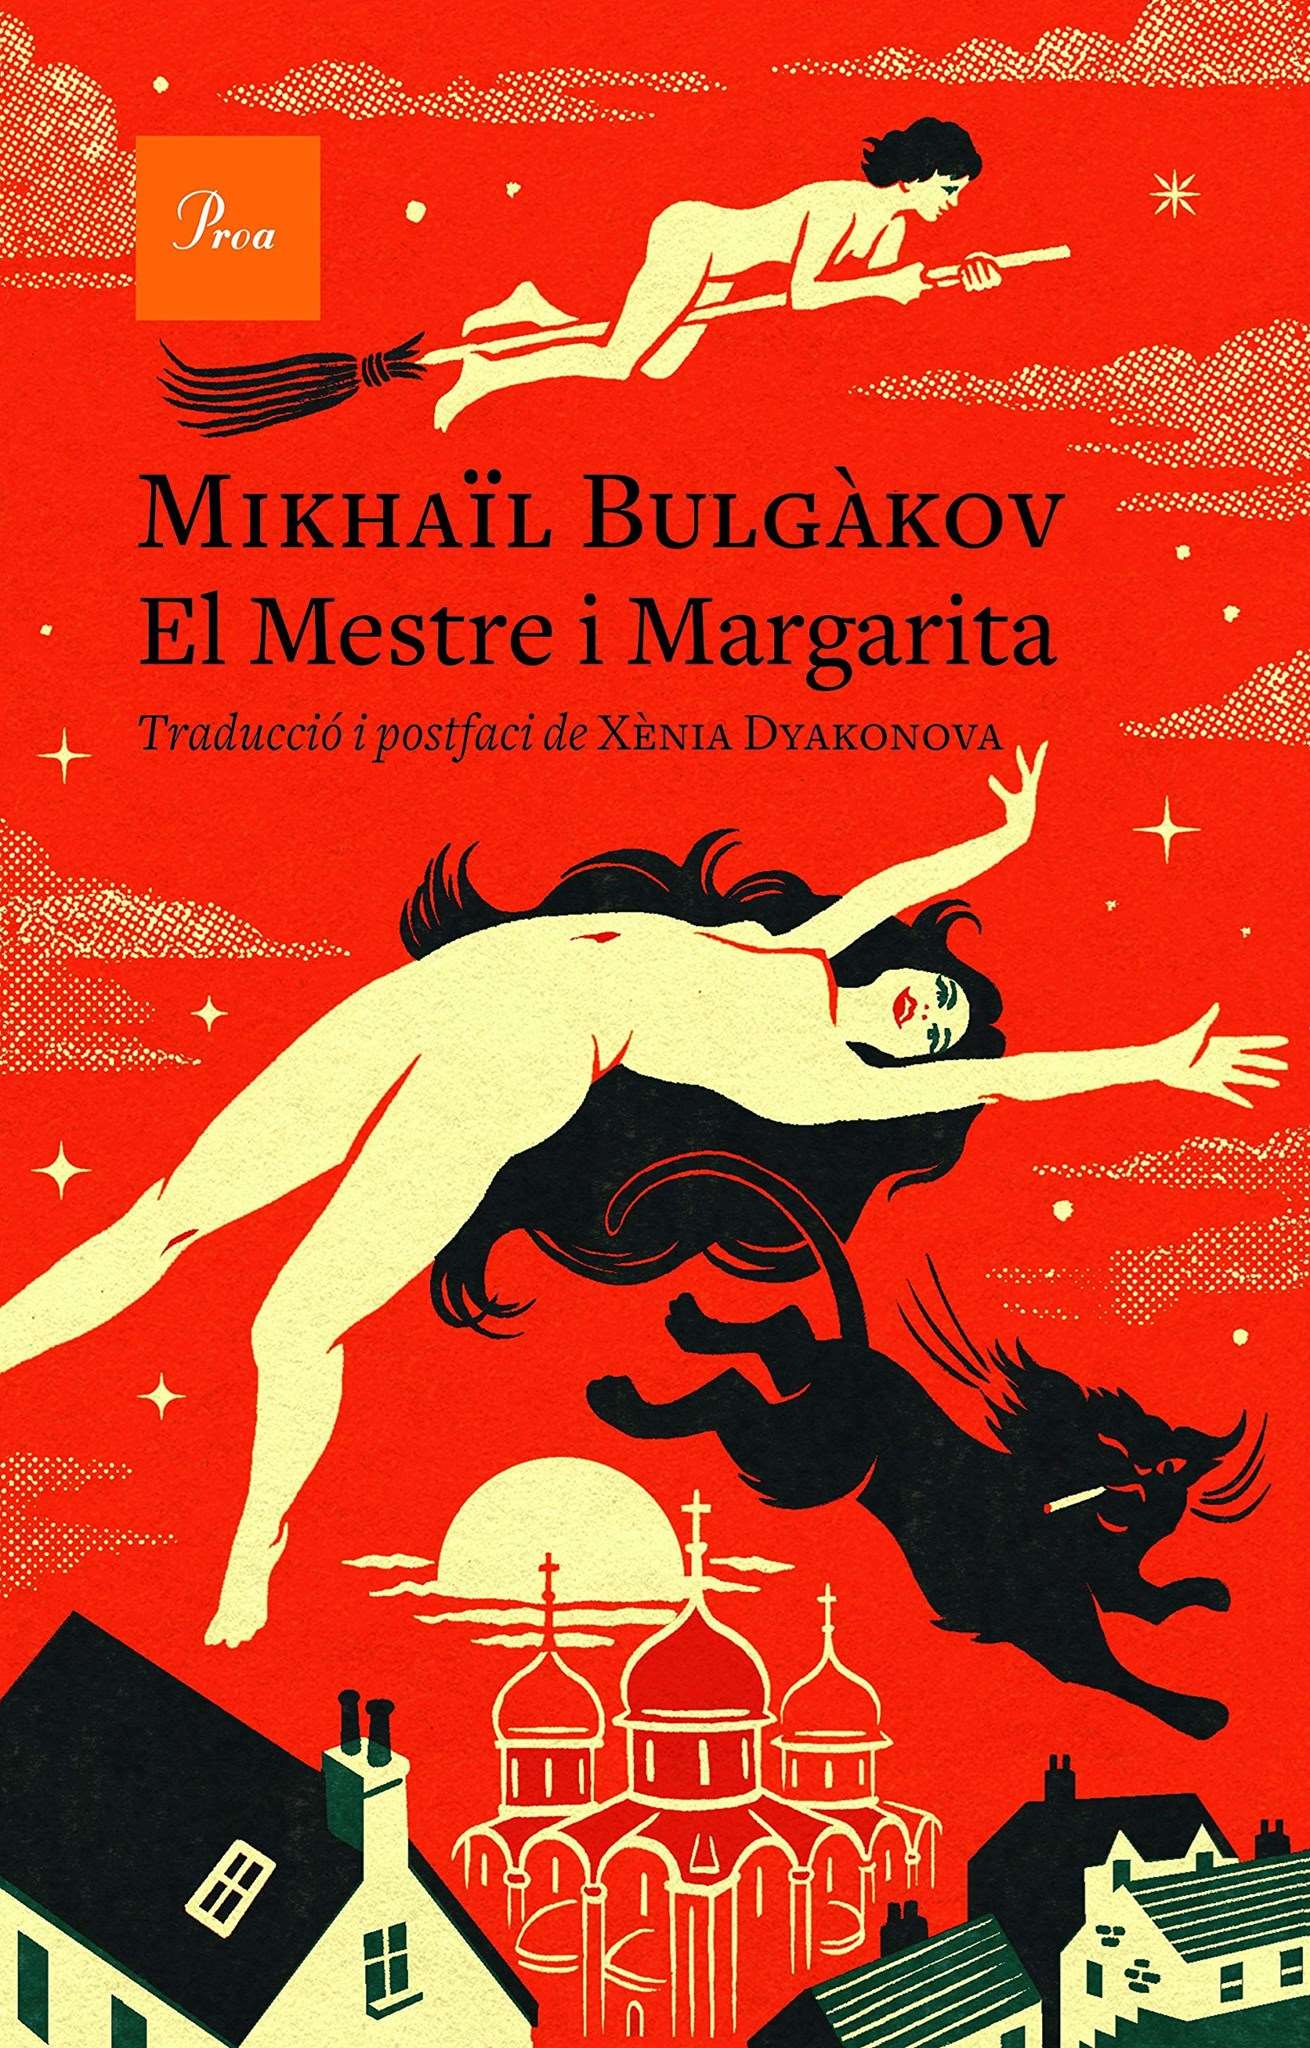  El Mestre i Margarita, de Mikhaïl Bulgàkov (Proa)